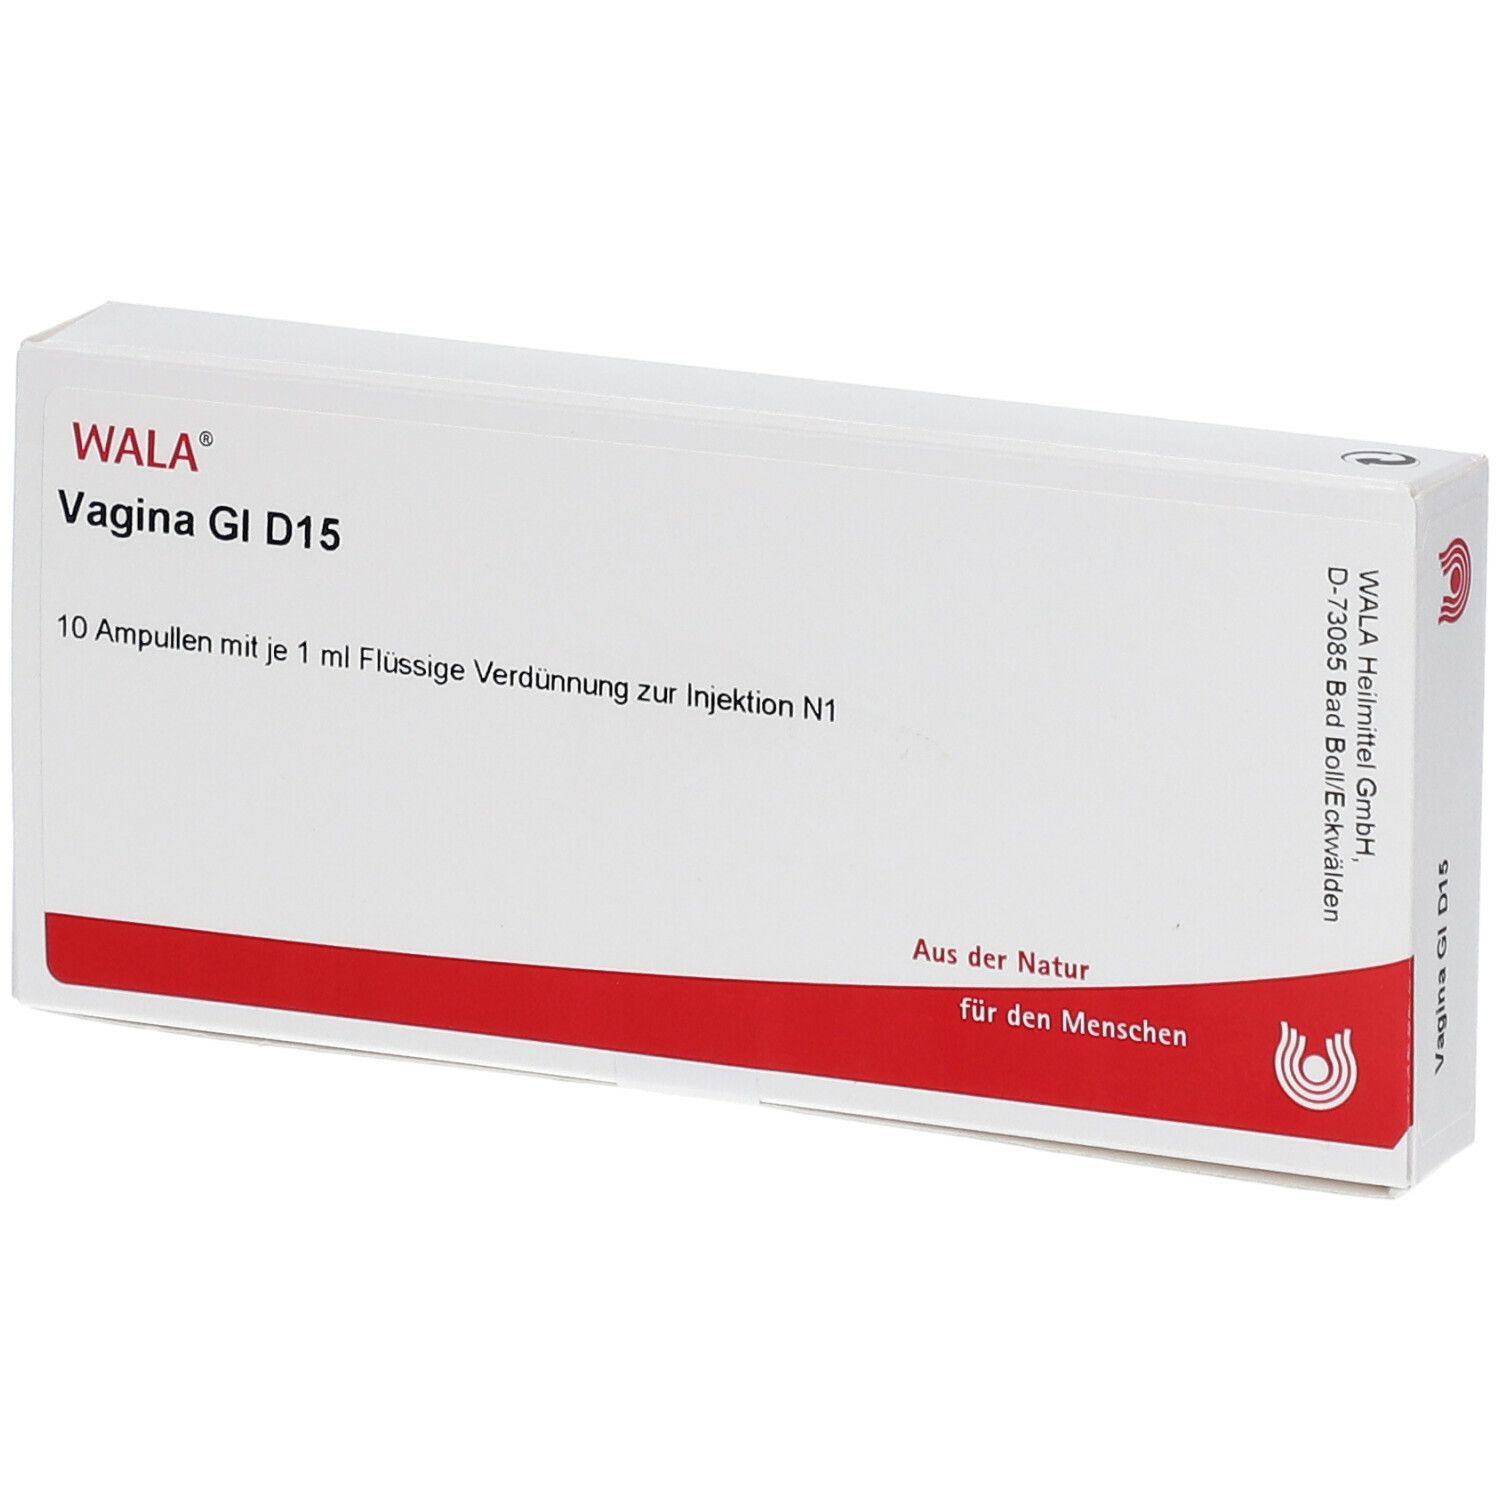 Wala® Vagina Gl D 15